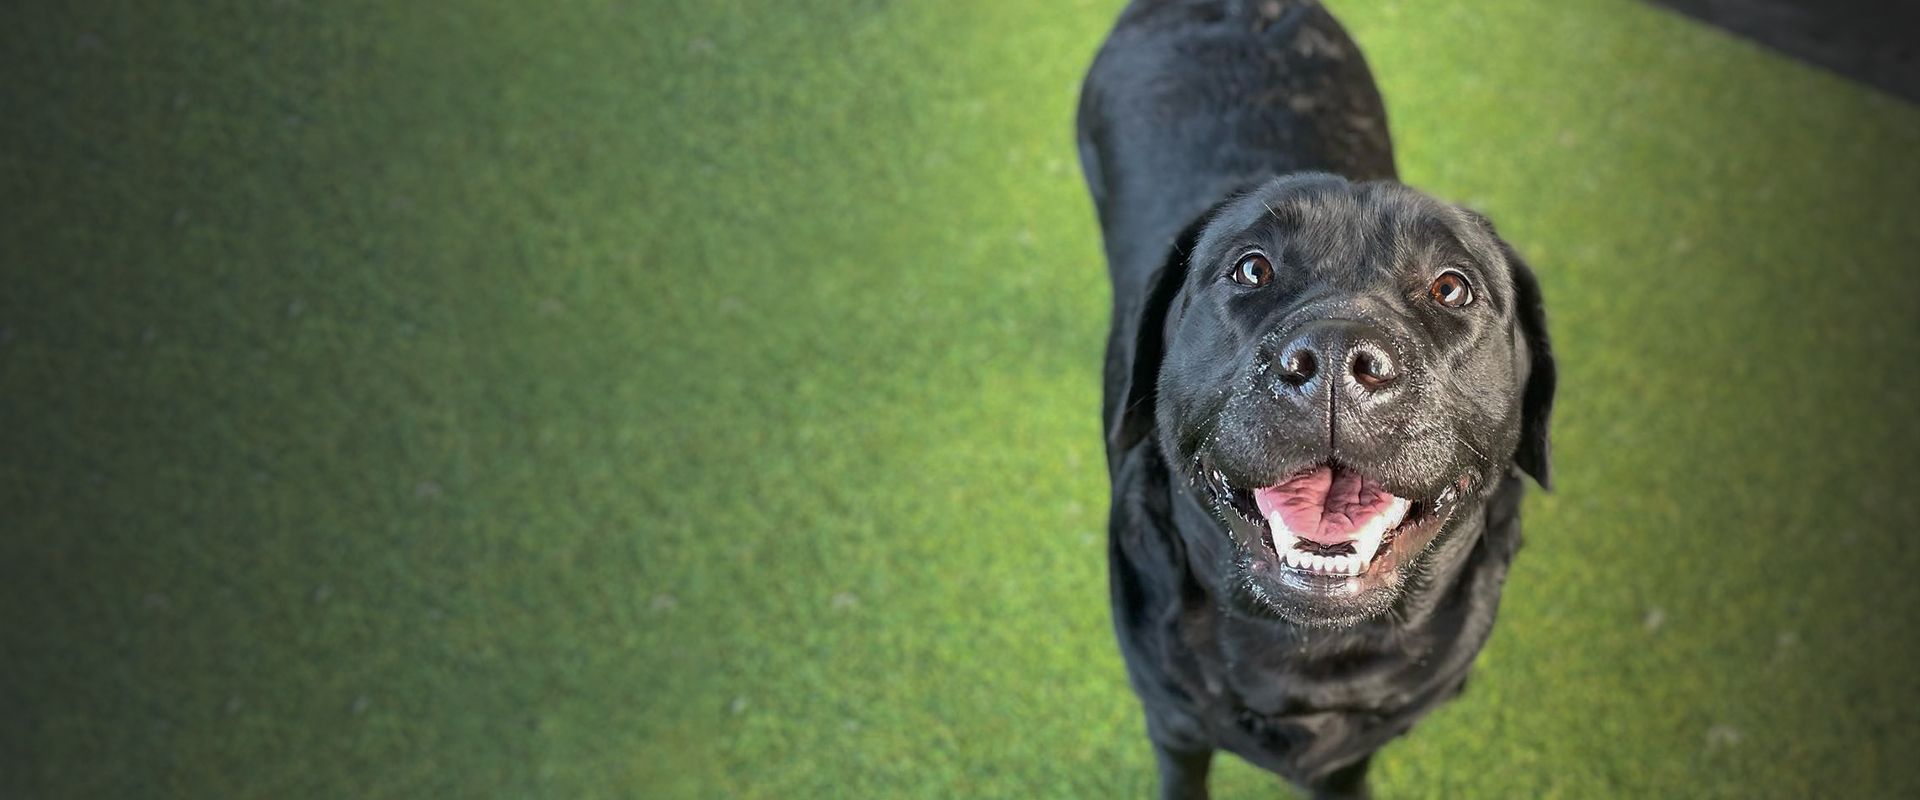 smiling black labrador dog